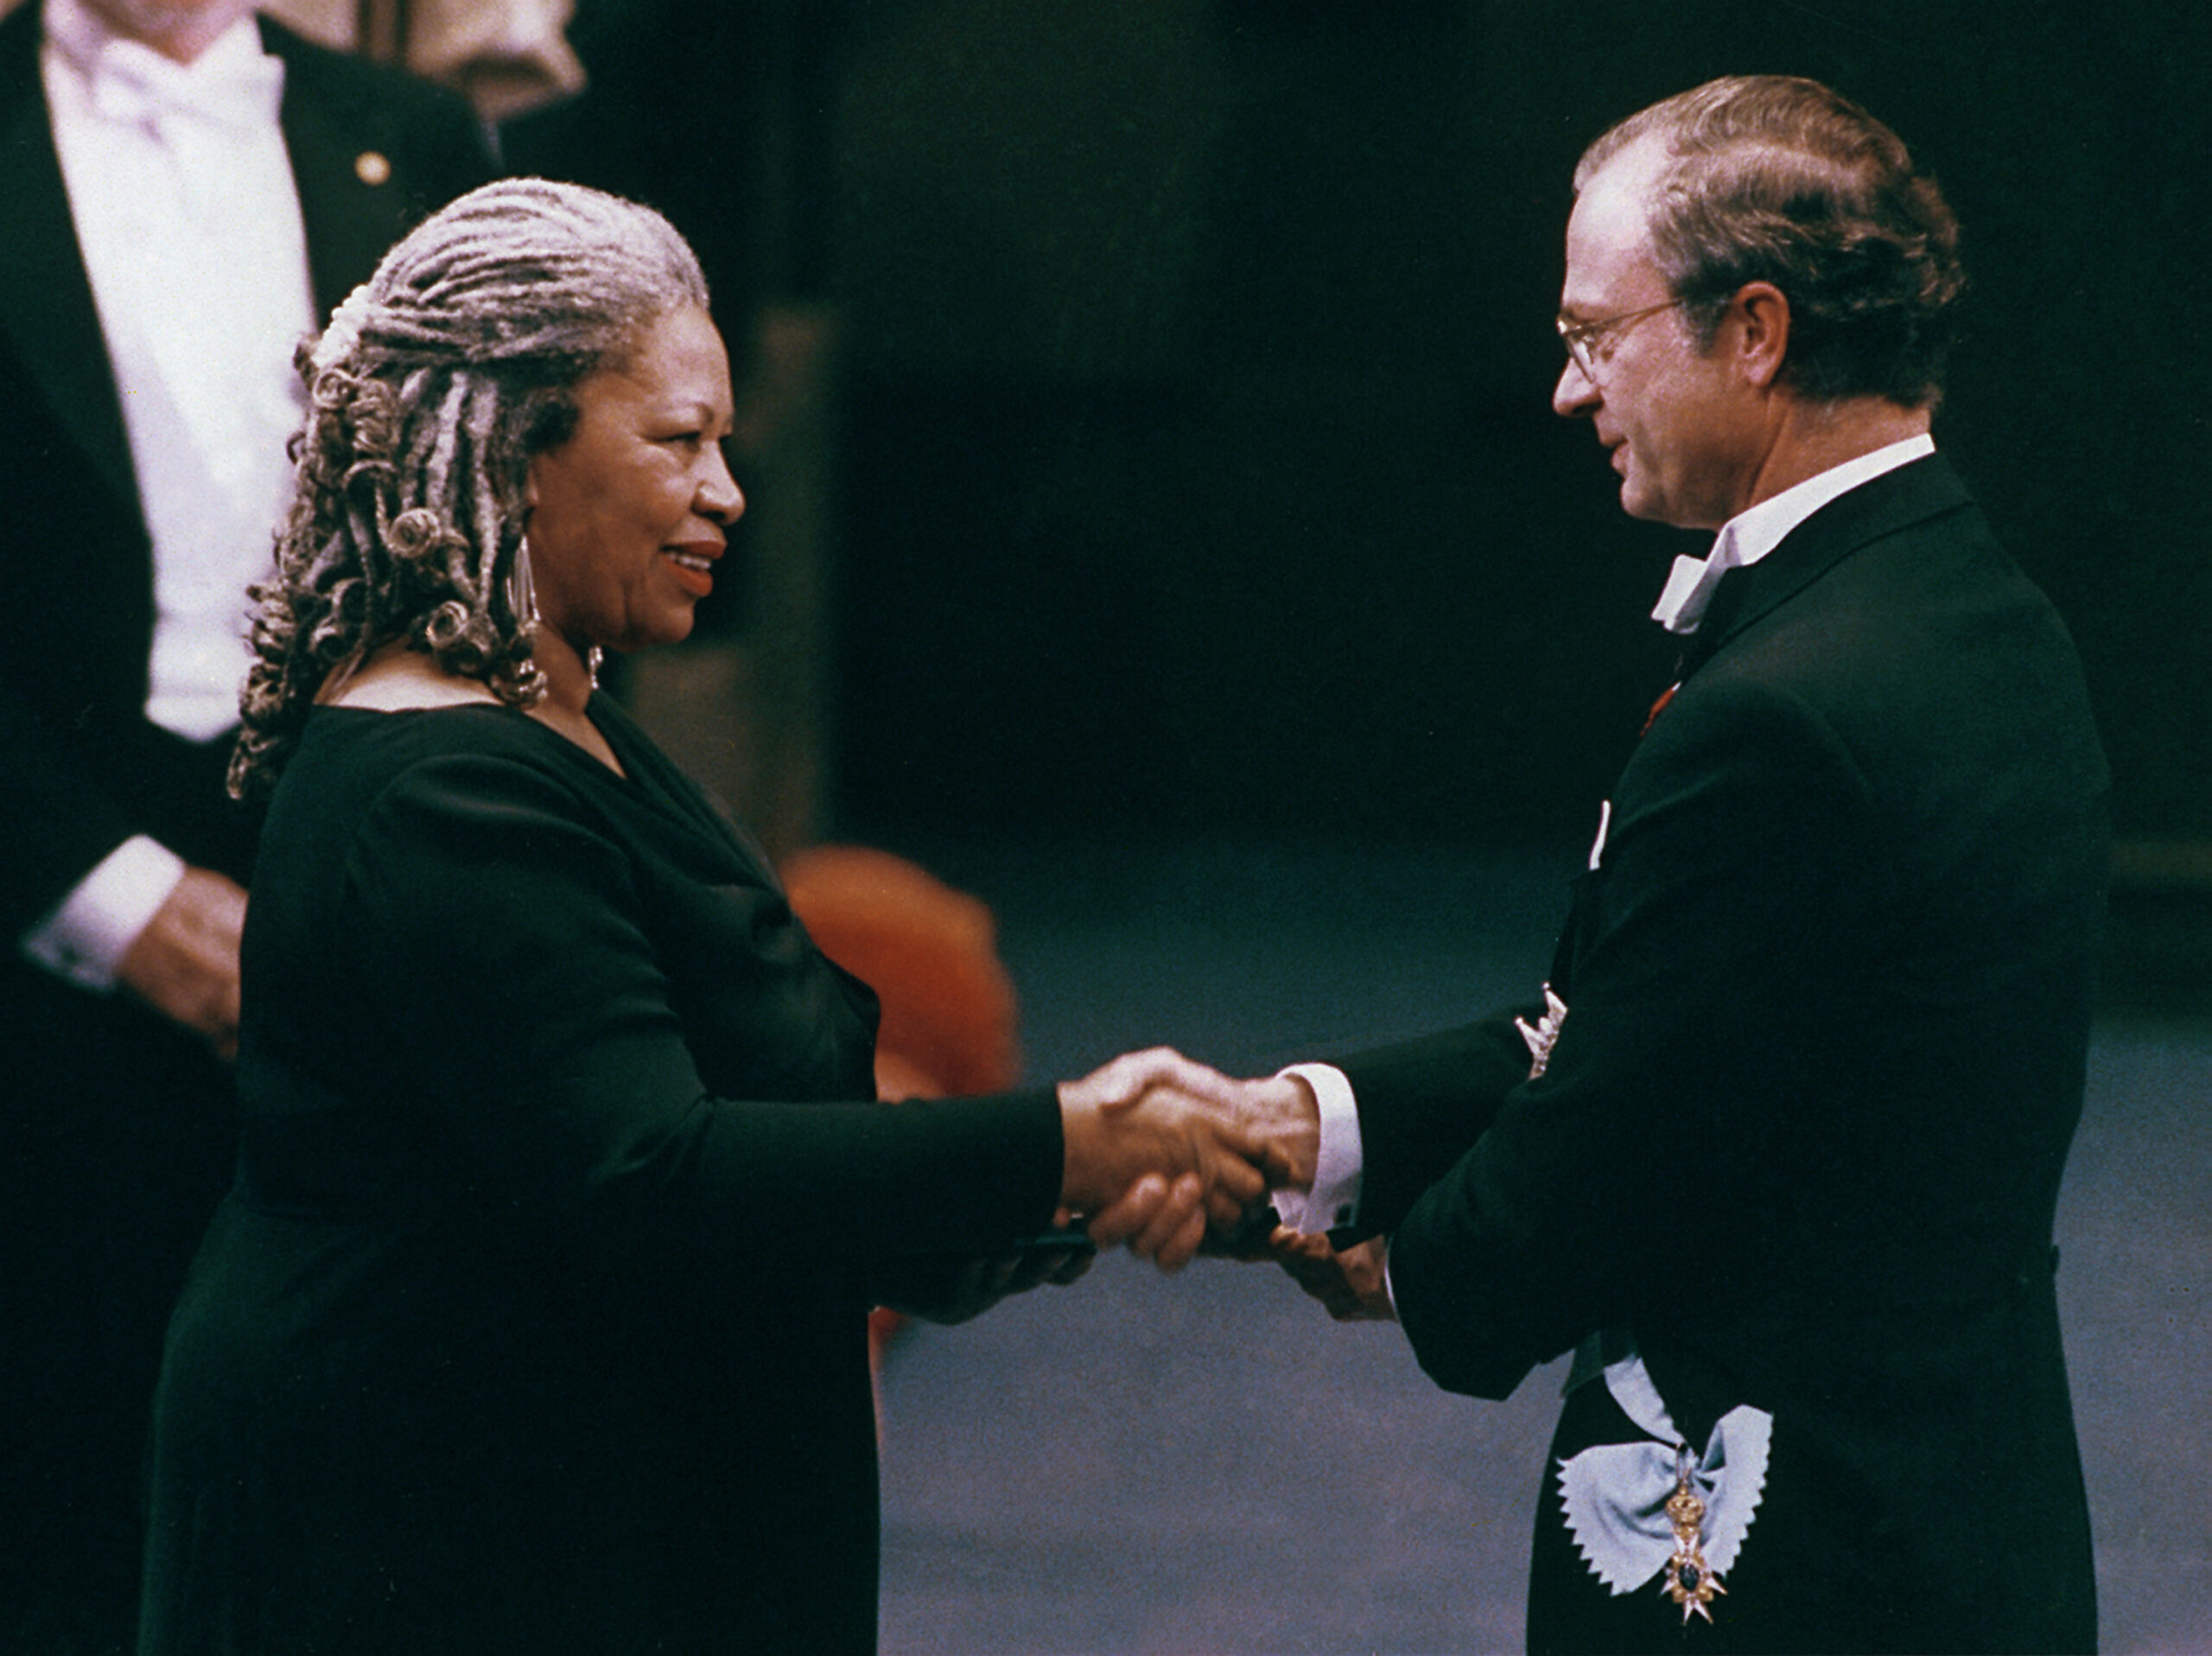 Toni Morrison receives the Nobel Prize